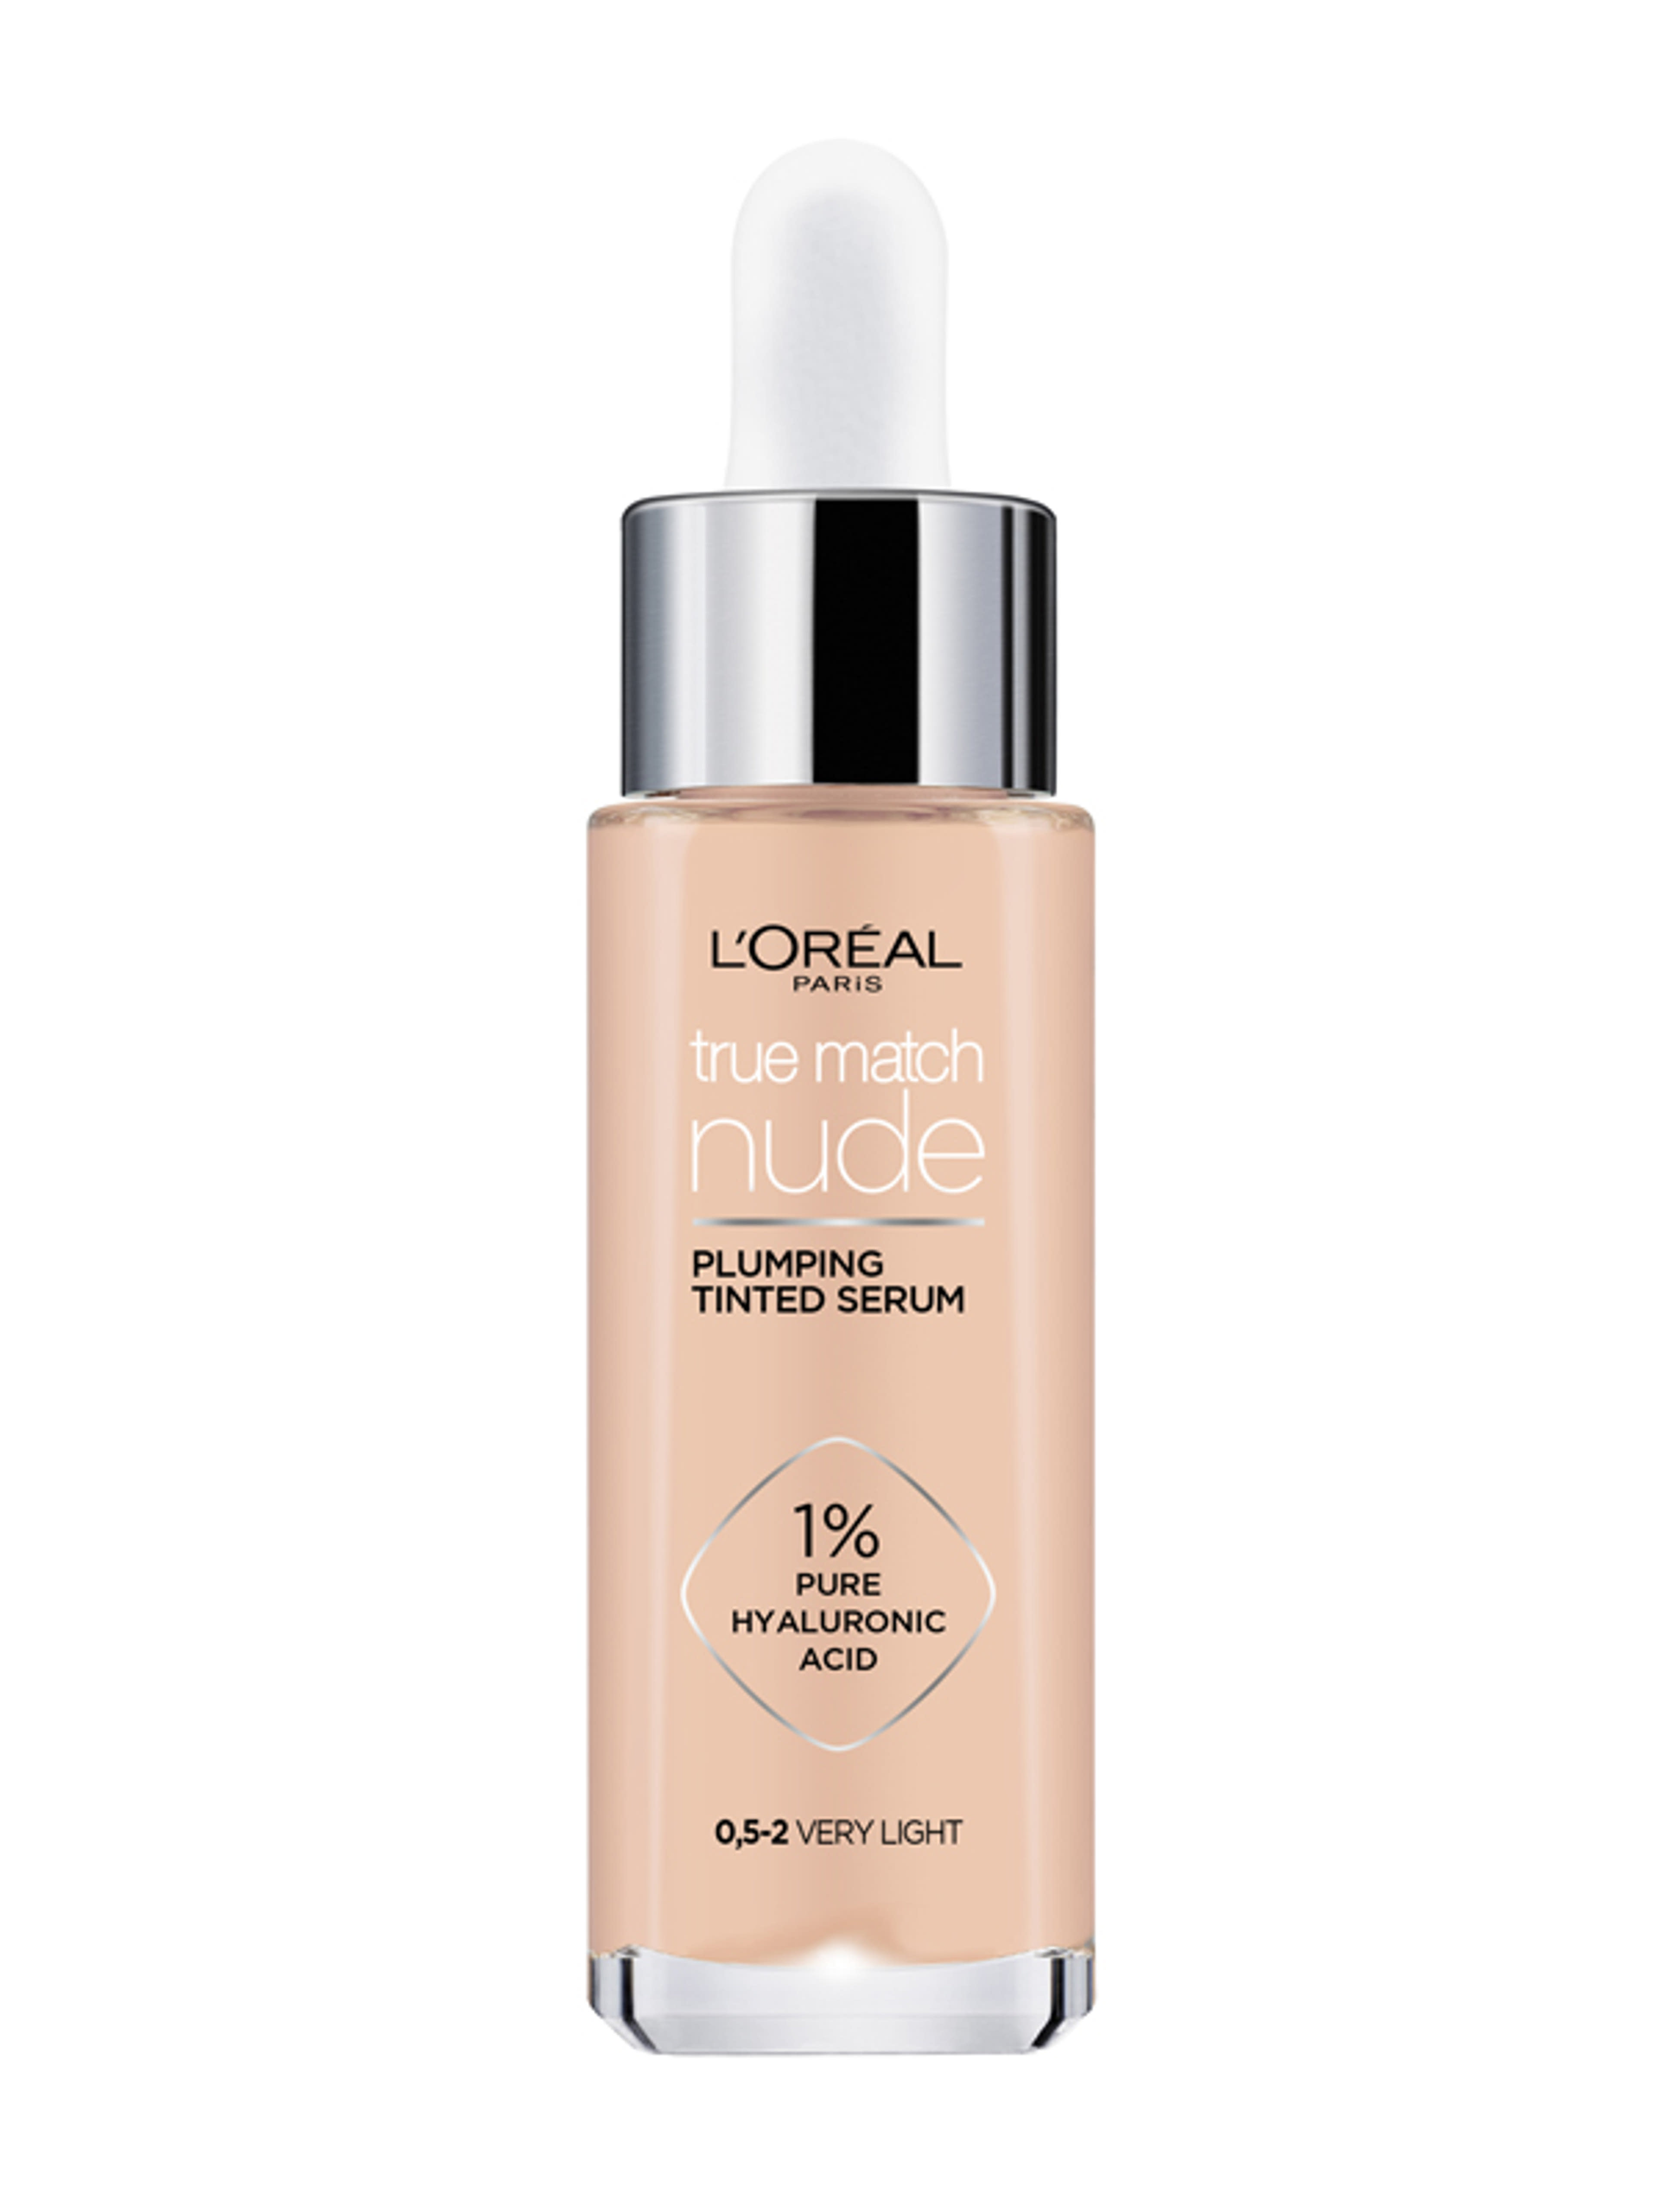 L'Oréal True Match Nude színezett szérum 5,0-2 - 1 db